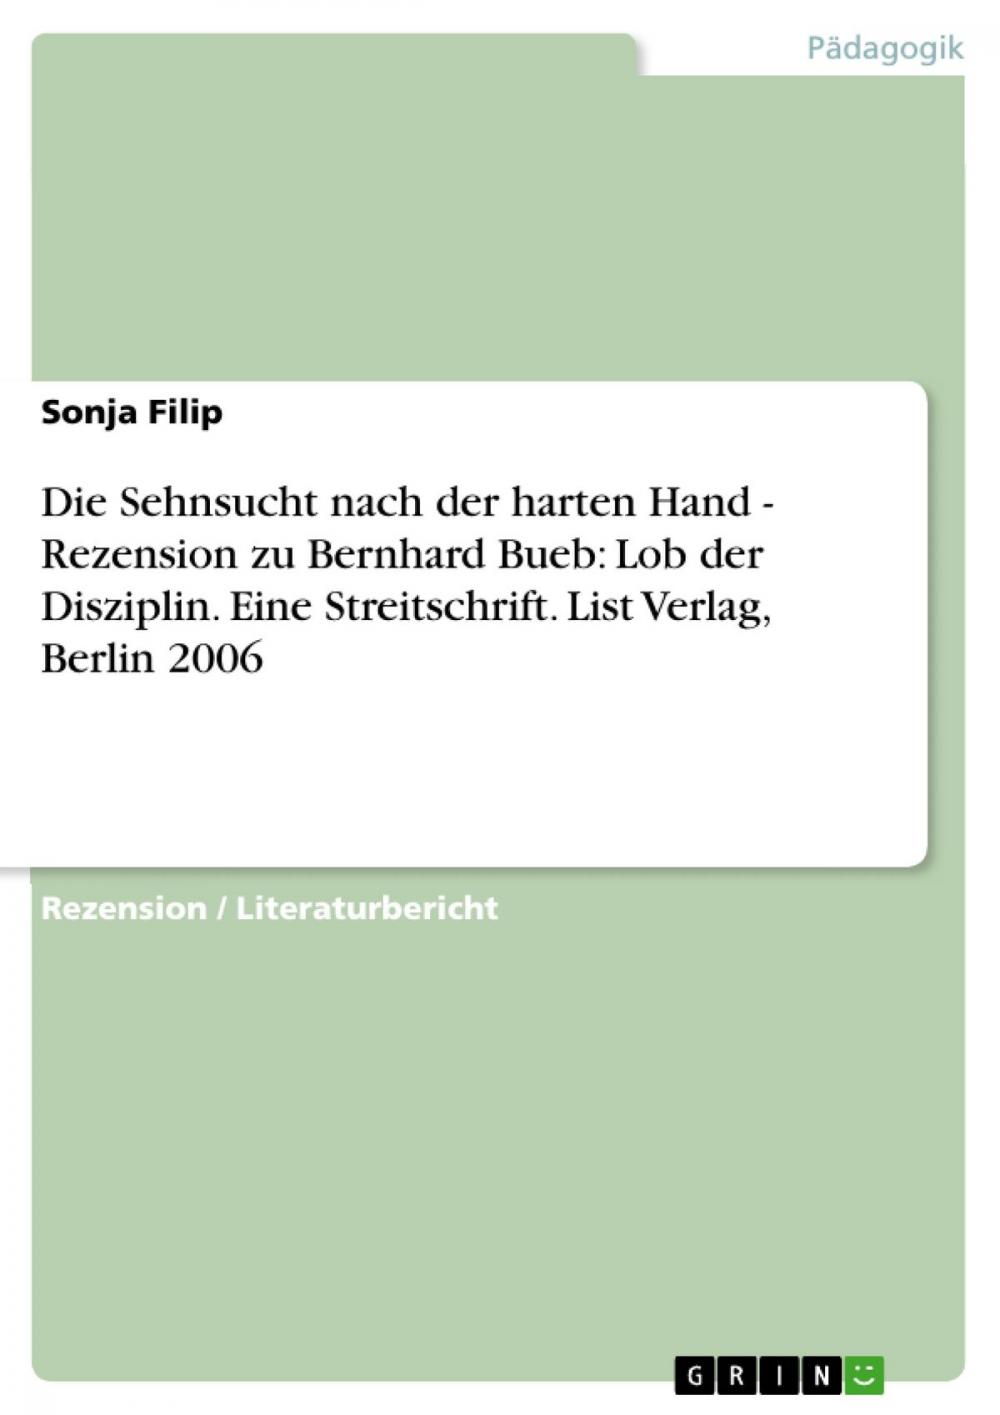 Big bigCover of Die Sehnsucht nach der harten Hand - Rezension zu Bernhard Bueb: Lob der Disziplin. Eine Streitschrift. List Verlag, Berlin 2006